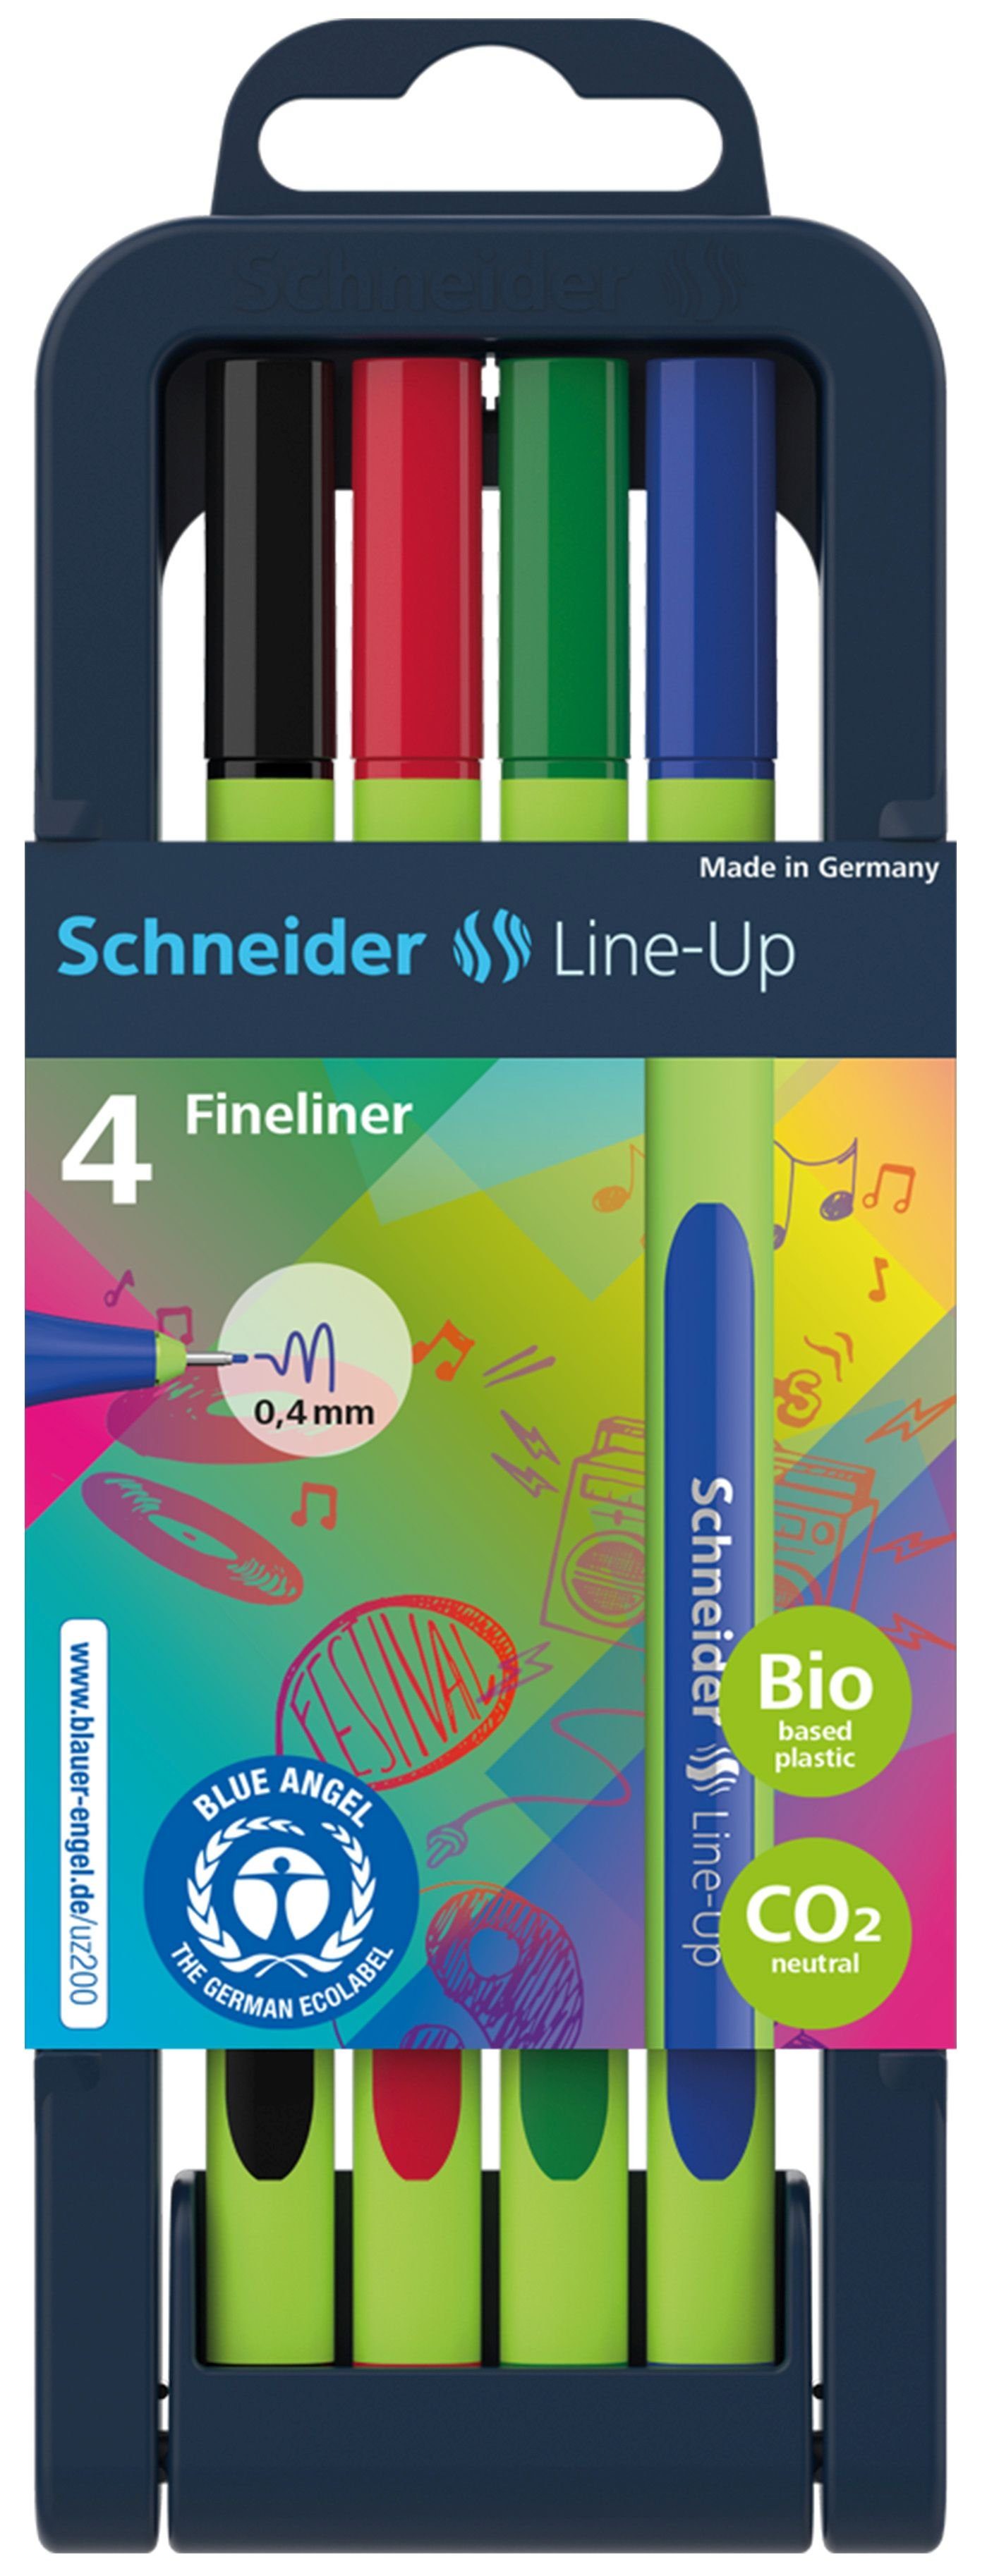 0,4 mm SCHNEIDER 4 Fineliner Line-Up Schneider farbsortiert Fineliner